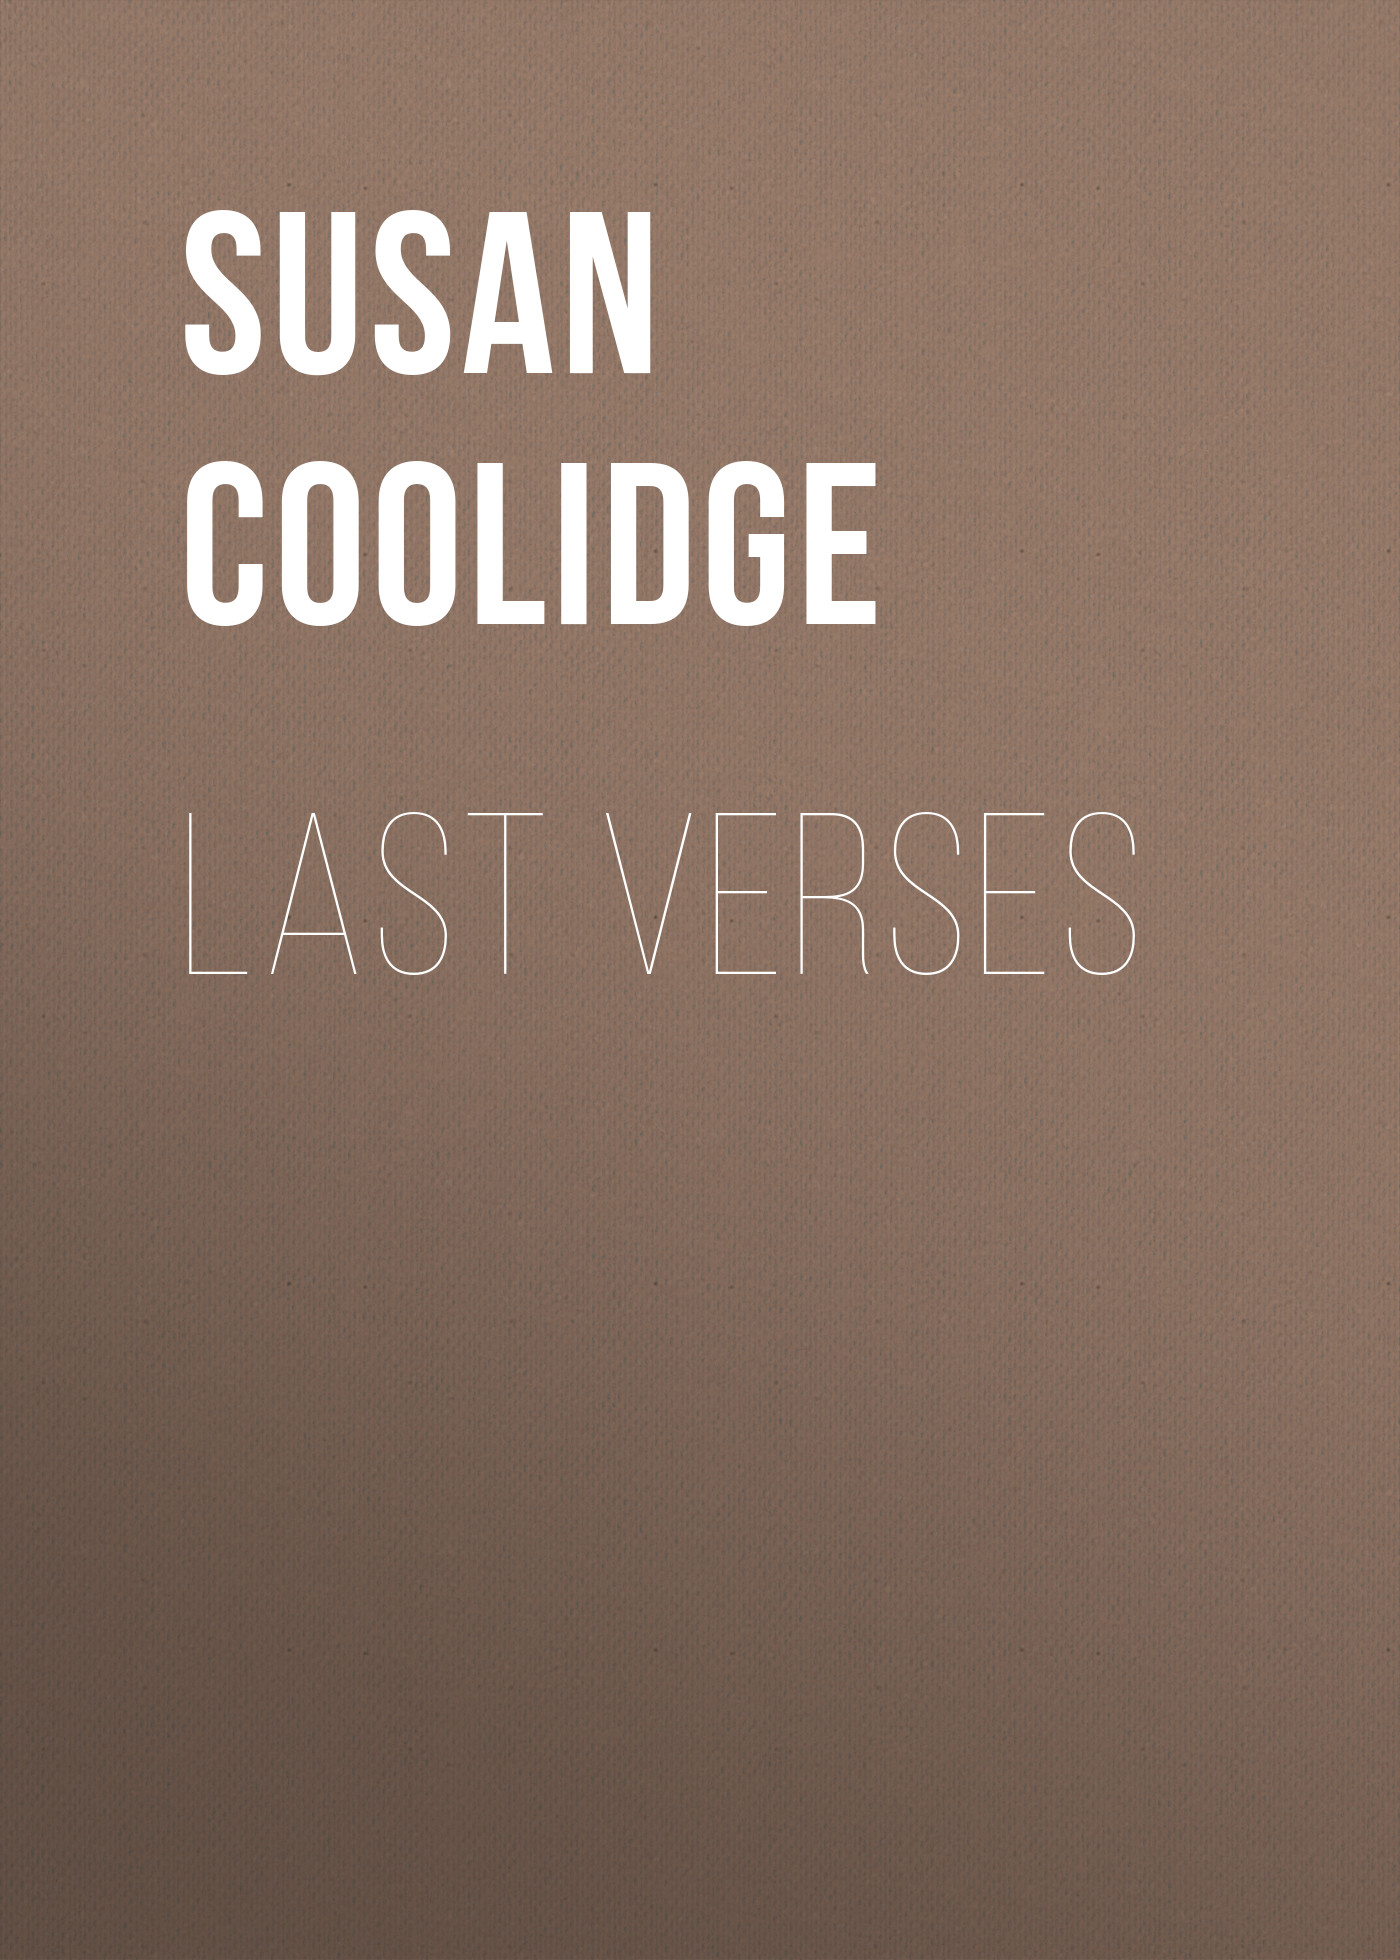 Книга Last Verses из серии , созданная Susan Coolidge, может относится к жанру Зарубежная классика. Стоимость электронной книги Last Verses с идентификатором 23160491 составляет 5.99 руб.